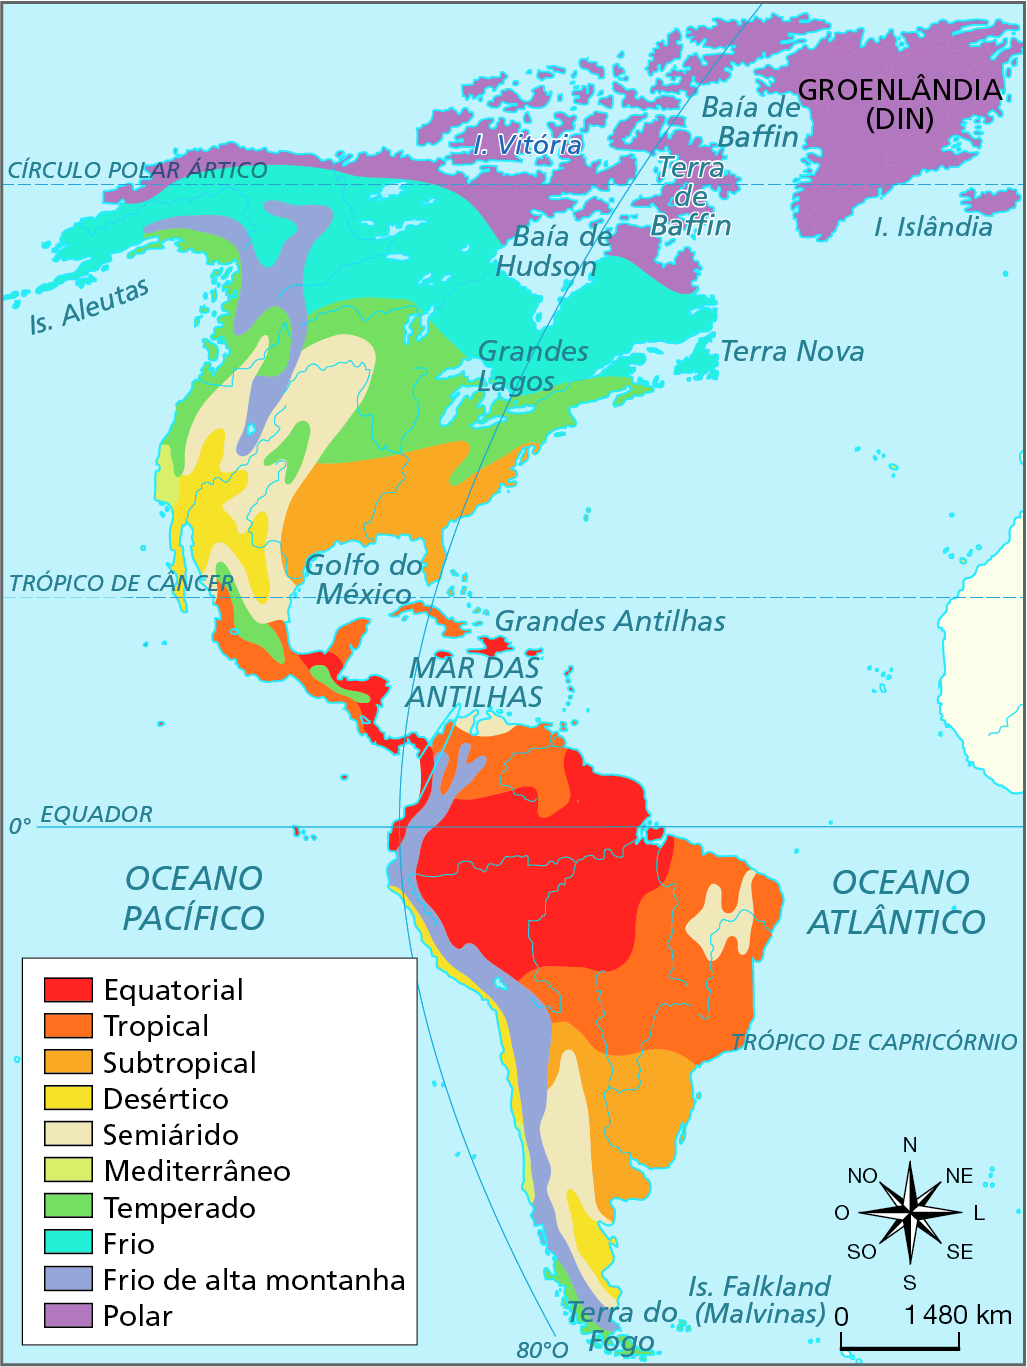 Mapa. América: tipos de clima.  Mapa do continente americano com a representação das áreas de ocorrência dos climas.     Equatorial, em vermelho: predomina na porção norte do Brasil, dos países localizados no norte da América do Sul, como Colômbia e Guiana, e na costa leste da América Central.  Tropical, em laranja escuro: predomina na costa oeste da América Central, no extremo norte da América do Sul e na porção central, sudeste e nordeste do Brasil.  Clima Subtropical, em laranja-claro: predomina na porção sudeste da América do Sul e na porção sudeste da América do Norte.  Desértico, em amarelo: predomina na porção sudoeste da América do Norte, em estreita faixa na costa oeste da América do Sul e em uma pequena faixa no sul da América do Sul.  Semiárido, em amarelo-claro: ocupa faixa no sul da América do Sul, no nordeste do Brasil e no oeste da América do Norte.  Mediterrâneo, em verde-claro: pequena faixa na costa oeste dos Estados Unidos.  Temperado, em verde: faixa no centro da América Central e na porção central da América do Norte e na costa oeste do extremo sul da América do Sul.  Frio, em verde-vivo: predomina na porção norte da América do Norte.  Frio de alta montanha, em azul: faixa que se estende de norte a sul da costa oeste da América do Sul e faixa a noroeste da América do Norte.  Polar: predomina no extremo norte da América do Norte.  À direita, rosa dos ventos e escala de 0 a 1.480 quilômetros.